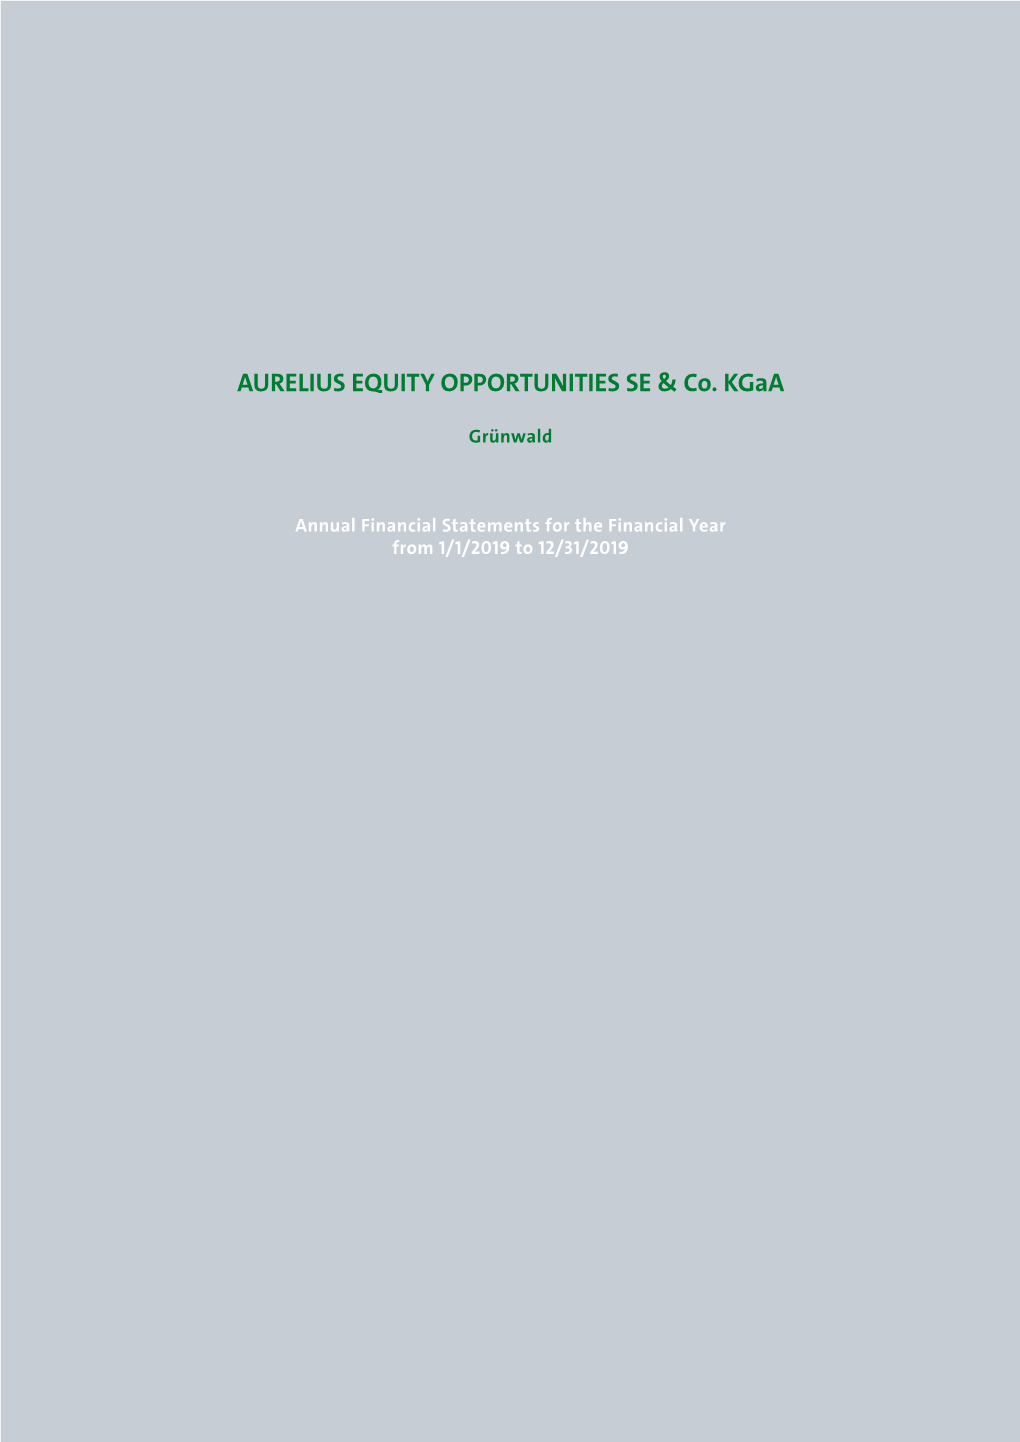 AURELIUS EQUITY OPPORTUNITIES SE & Co. Kgaa